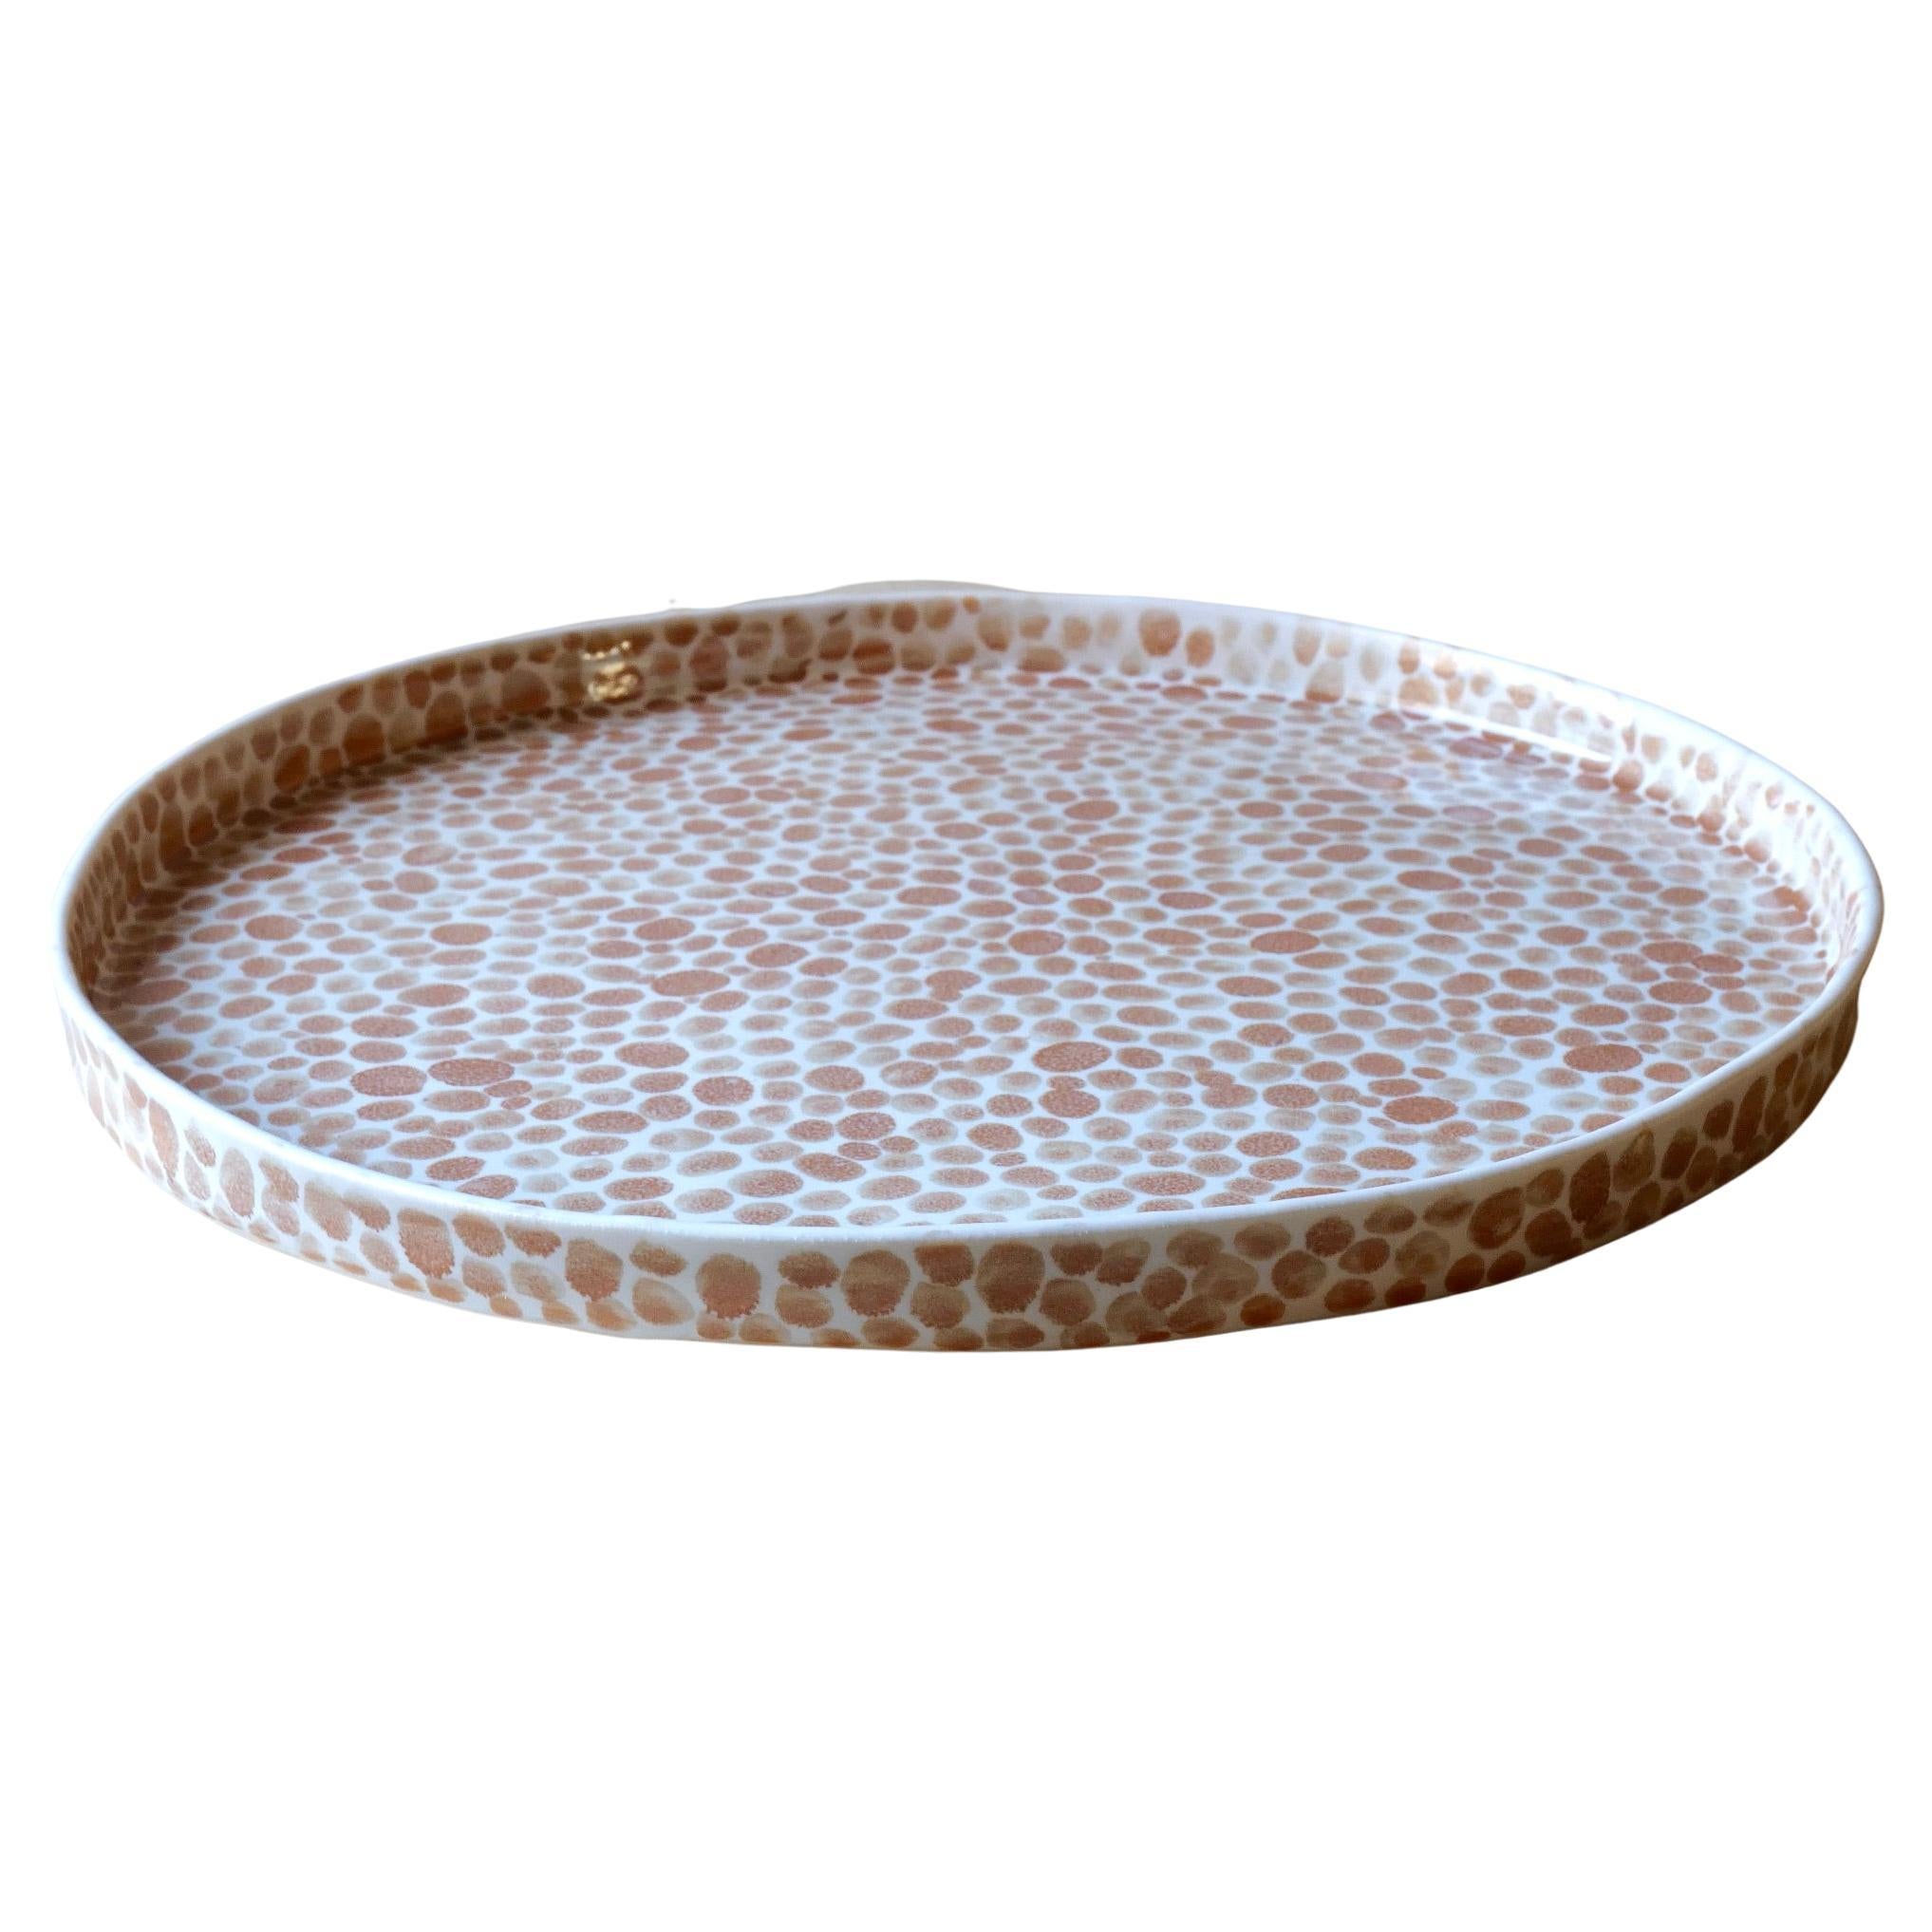 Tan Dots Porcelain Large Tray by Lana Kova